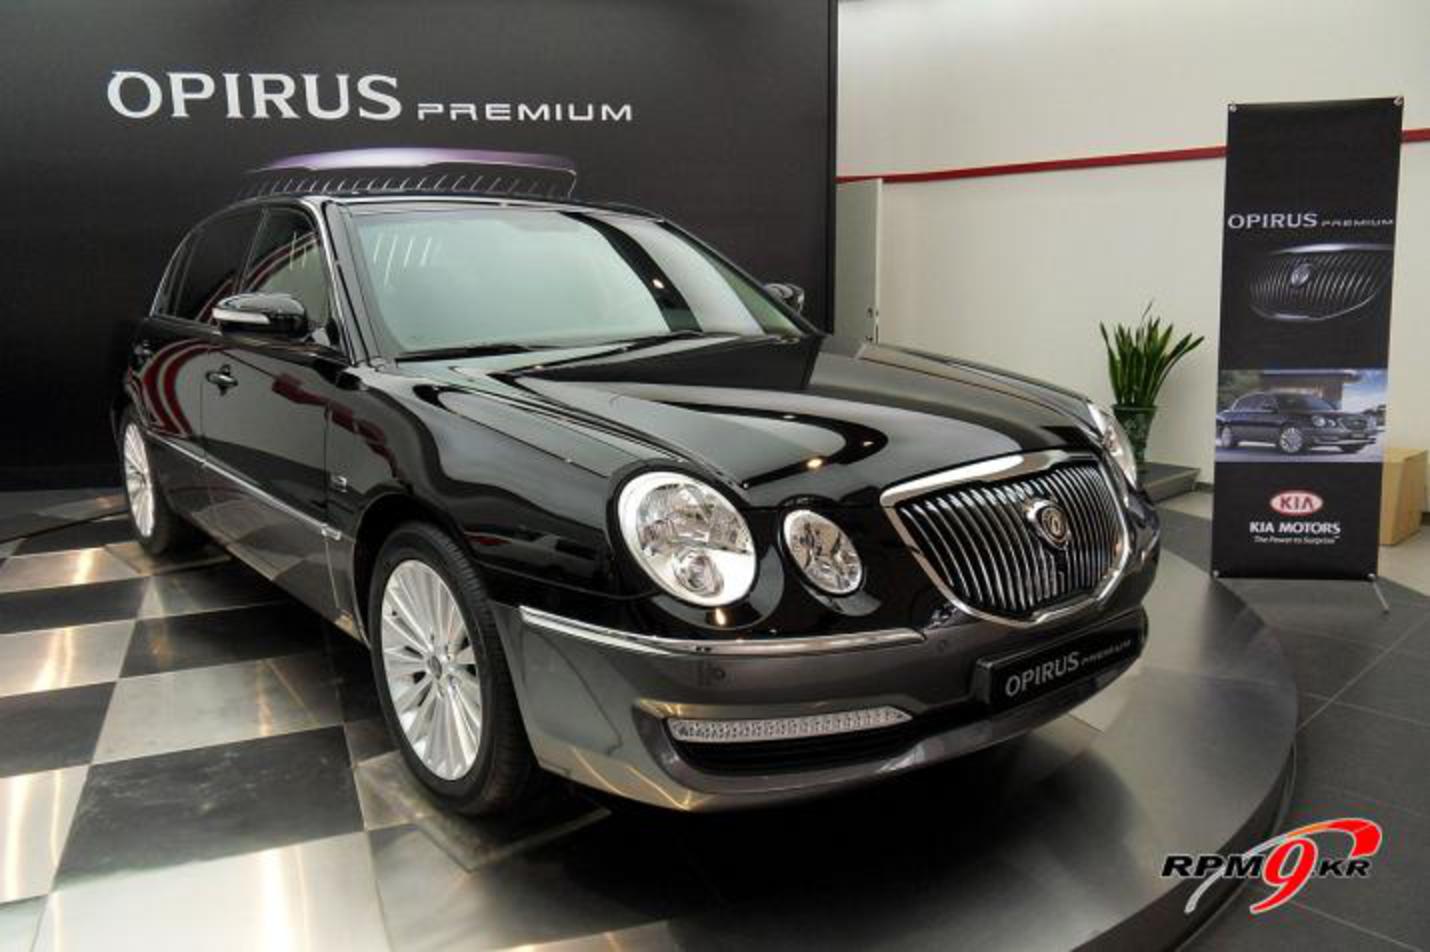 KIA Opirus (Amanti) Premium 2010 img_3 | It's your auto world ...